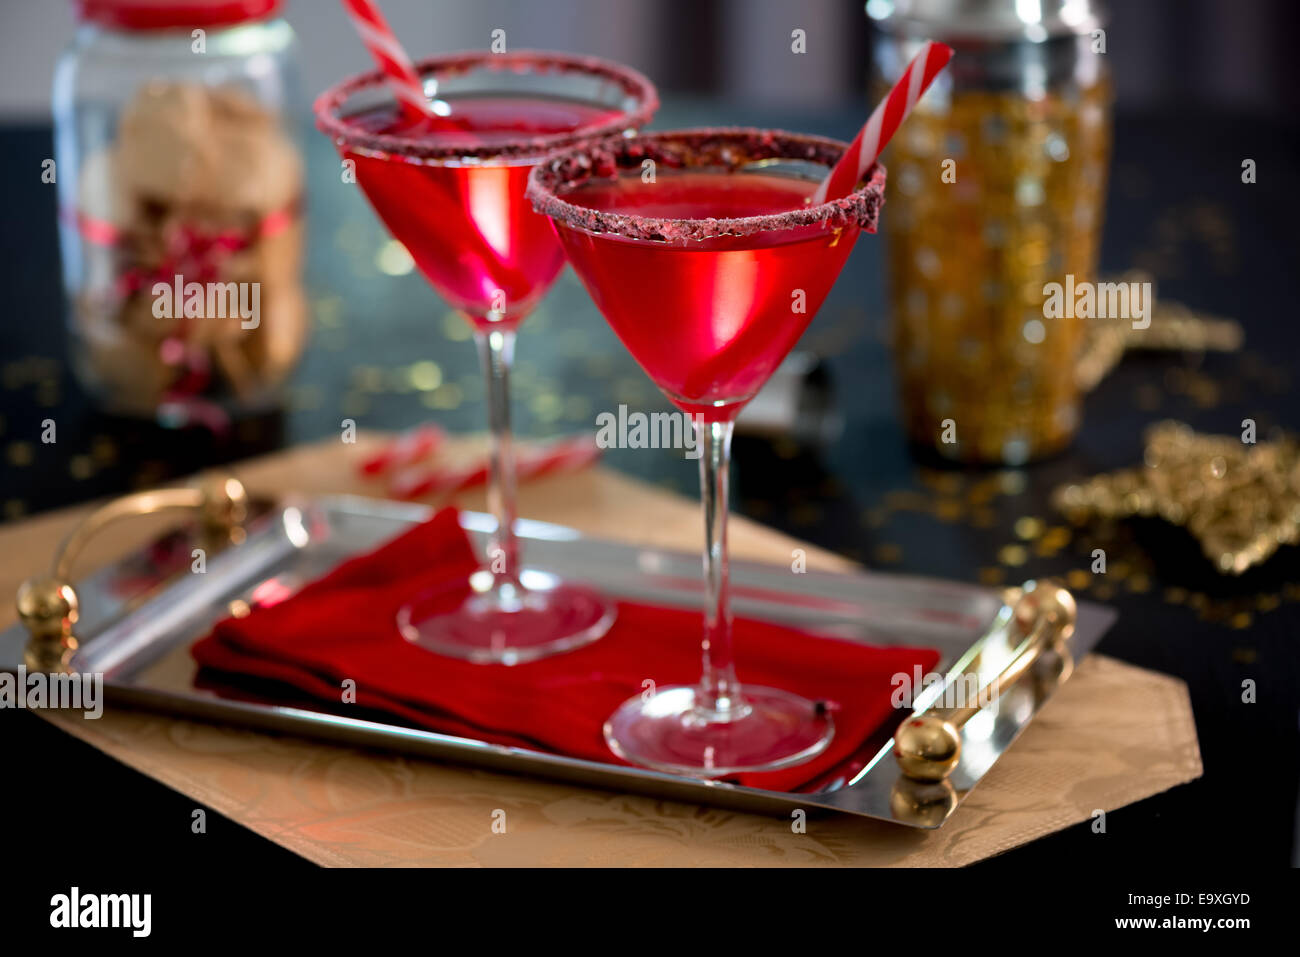 Cocktail pour Noël : la Vodka infusée de Candy Cane et bordés de verre concassé et chocolat Candy Cane. Super pour facilement acessible Banque D'Images